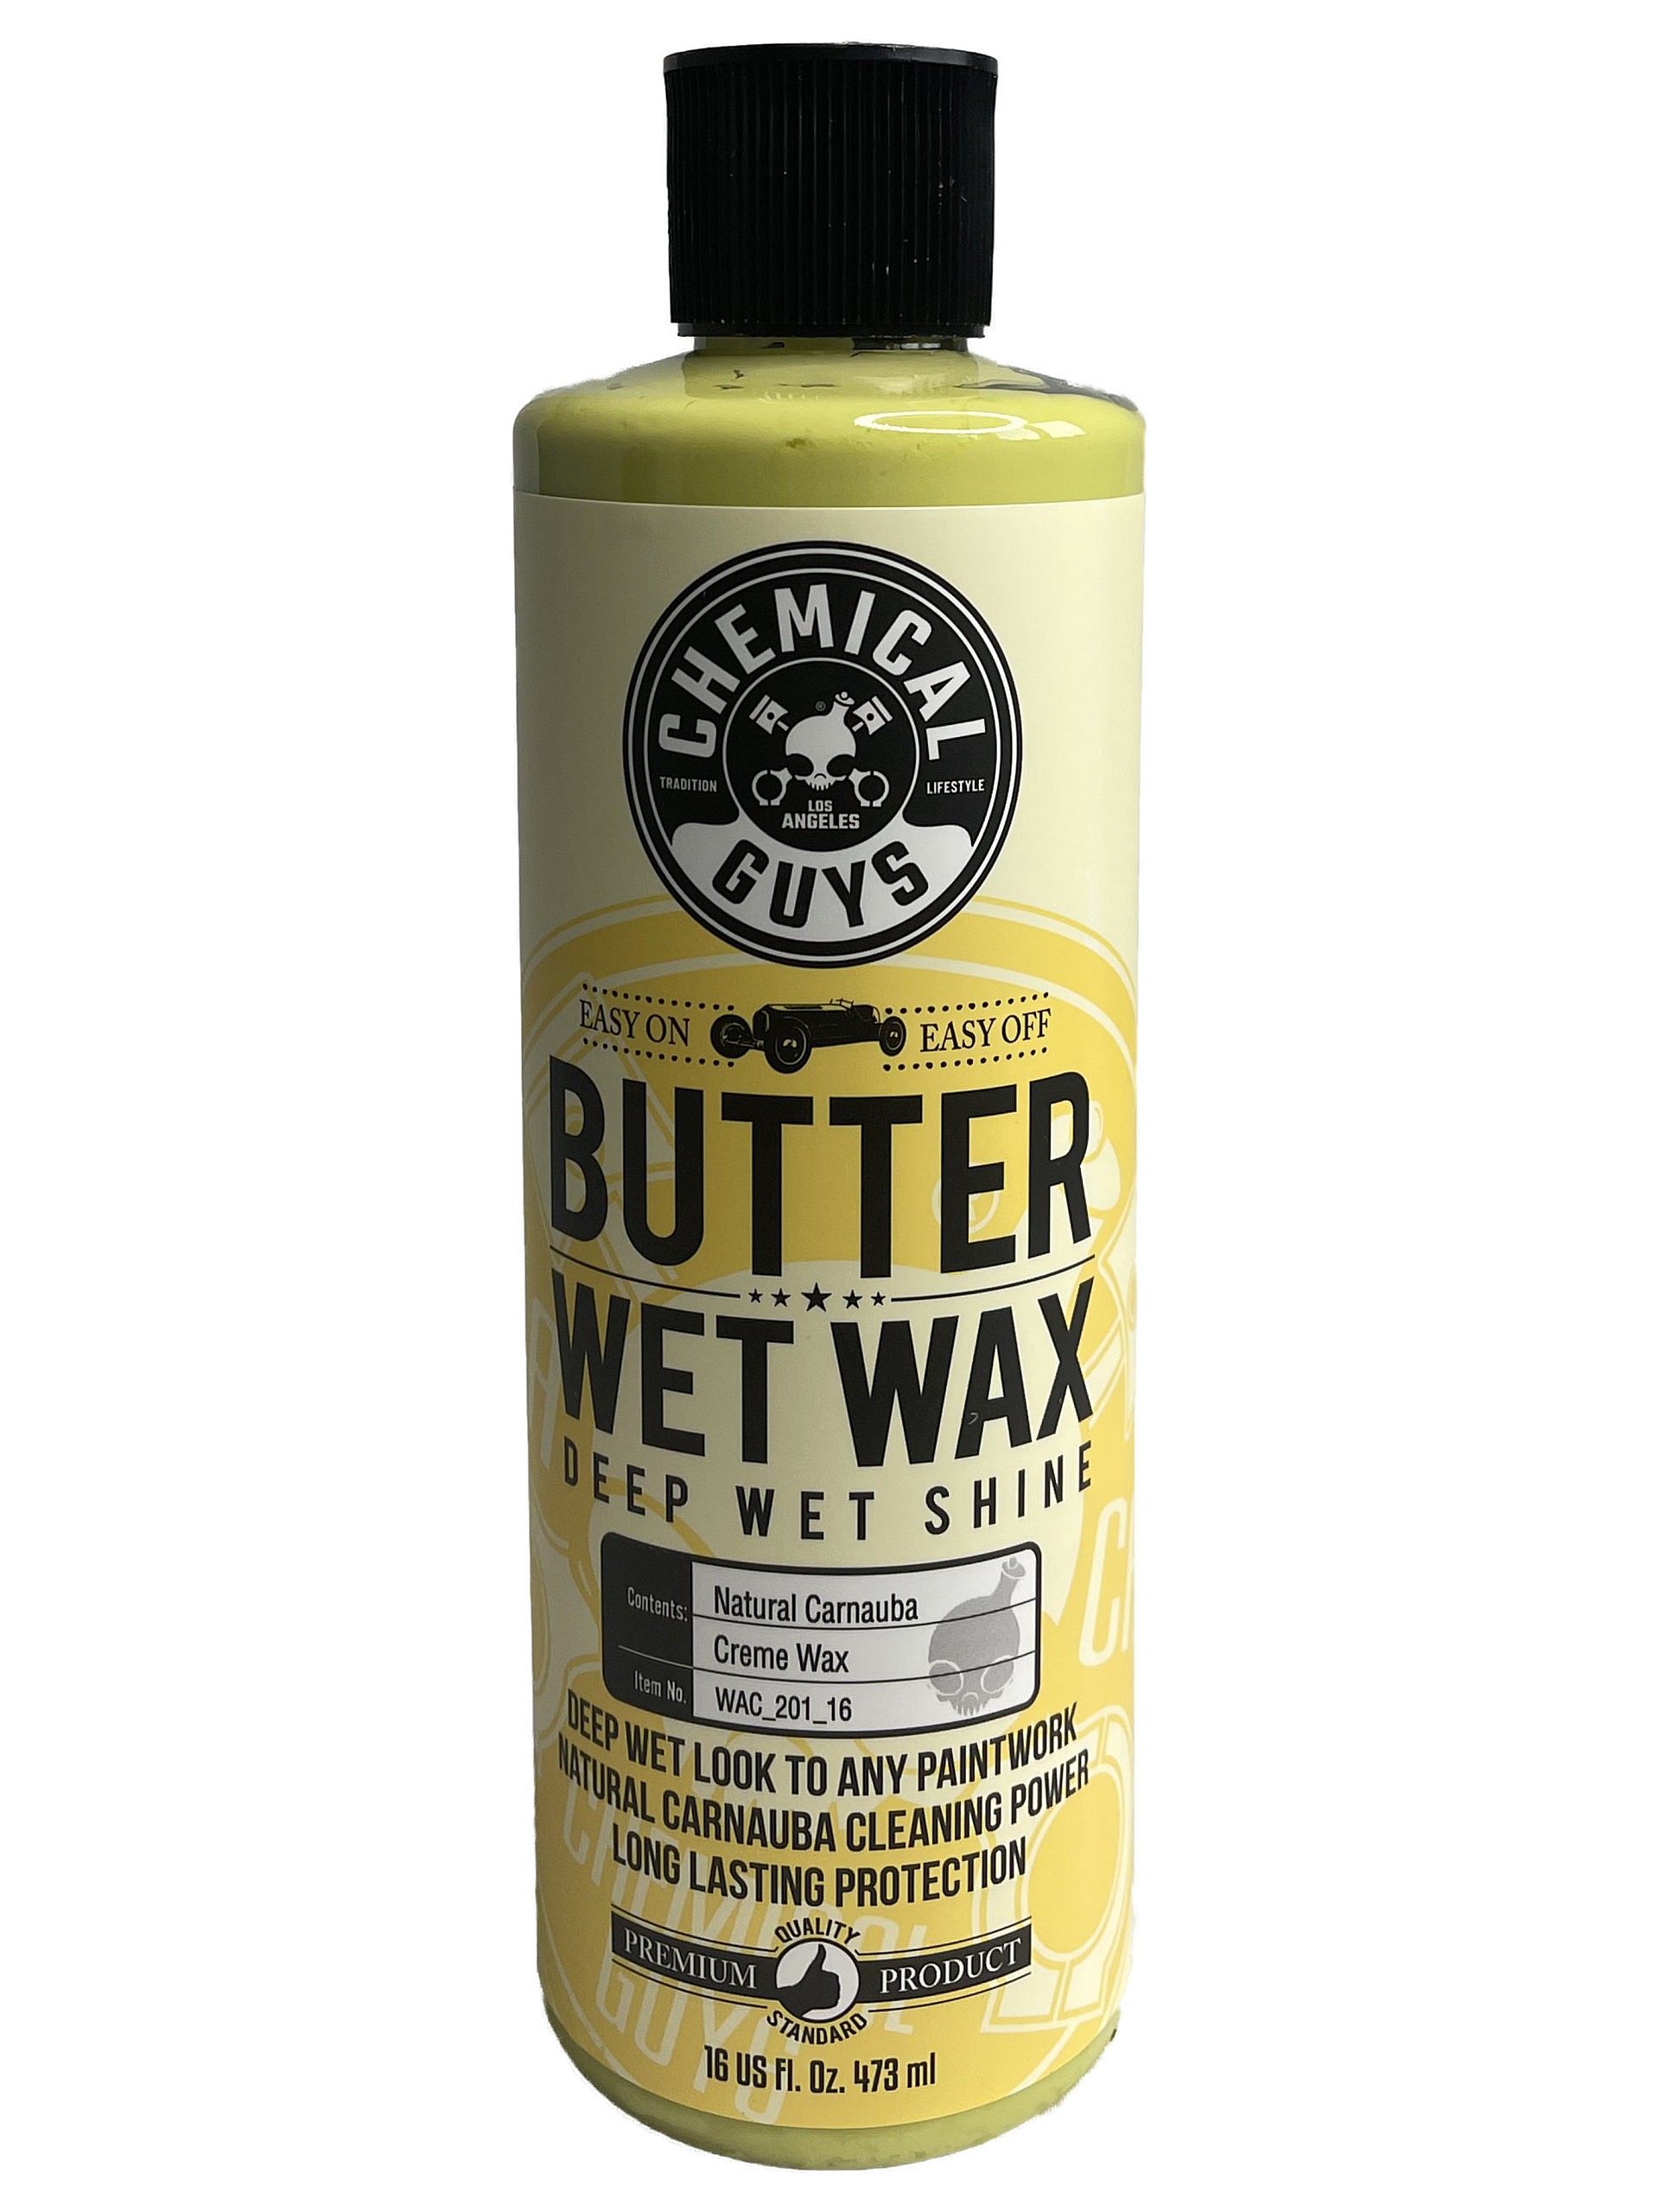 Butter Wet Wax Deep Wet Shine